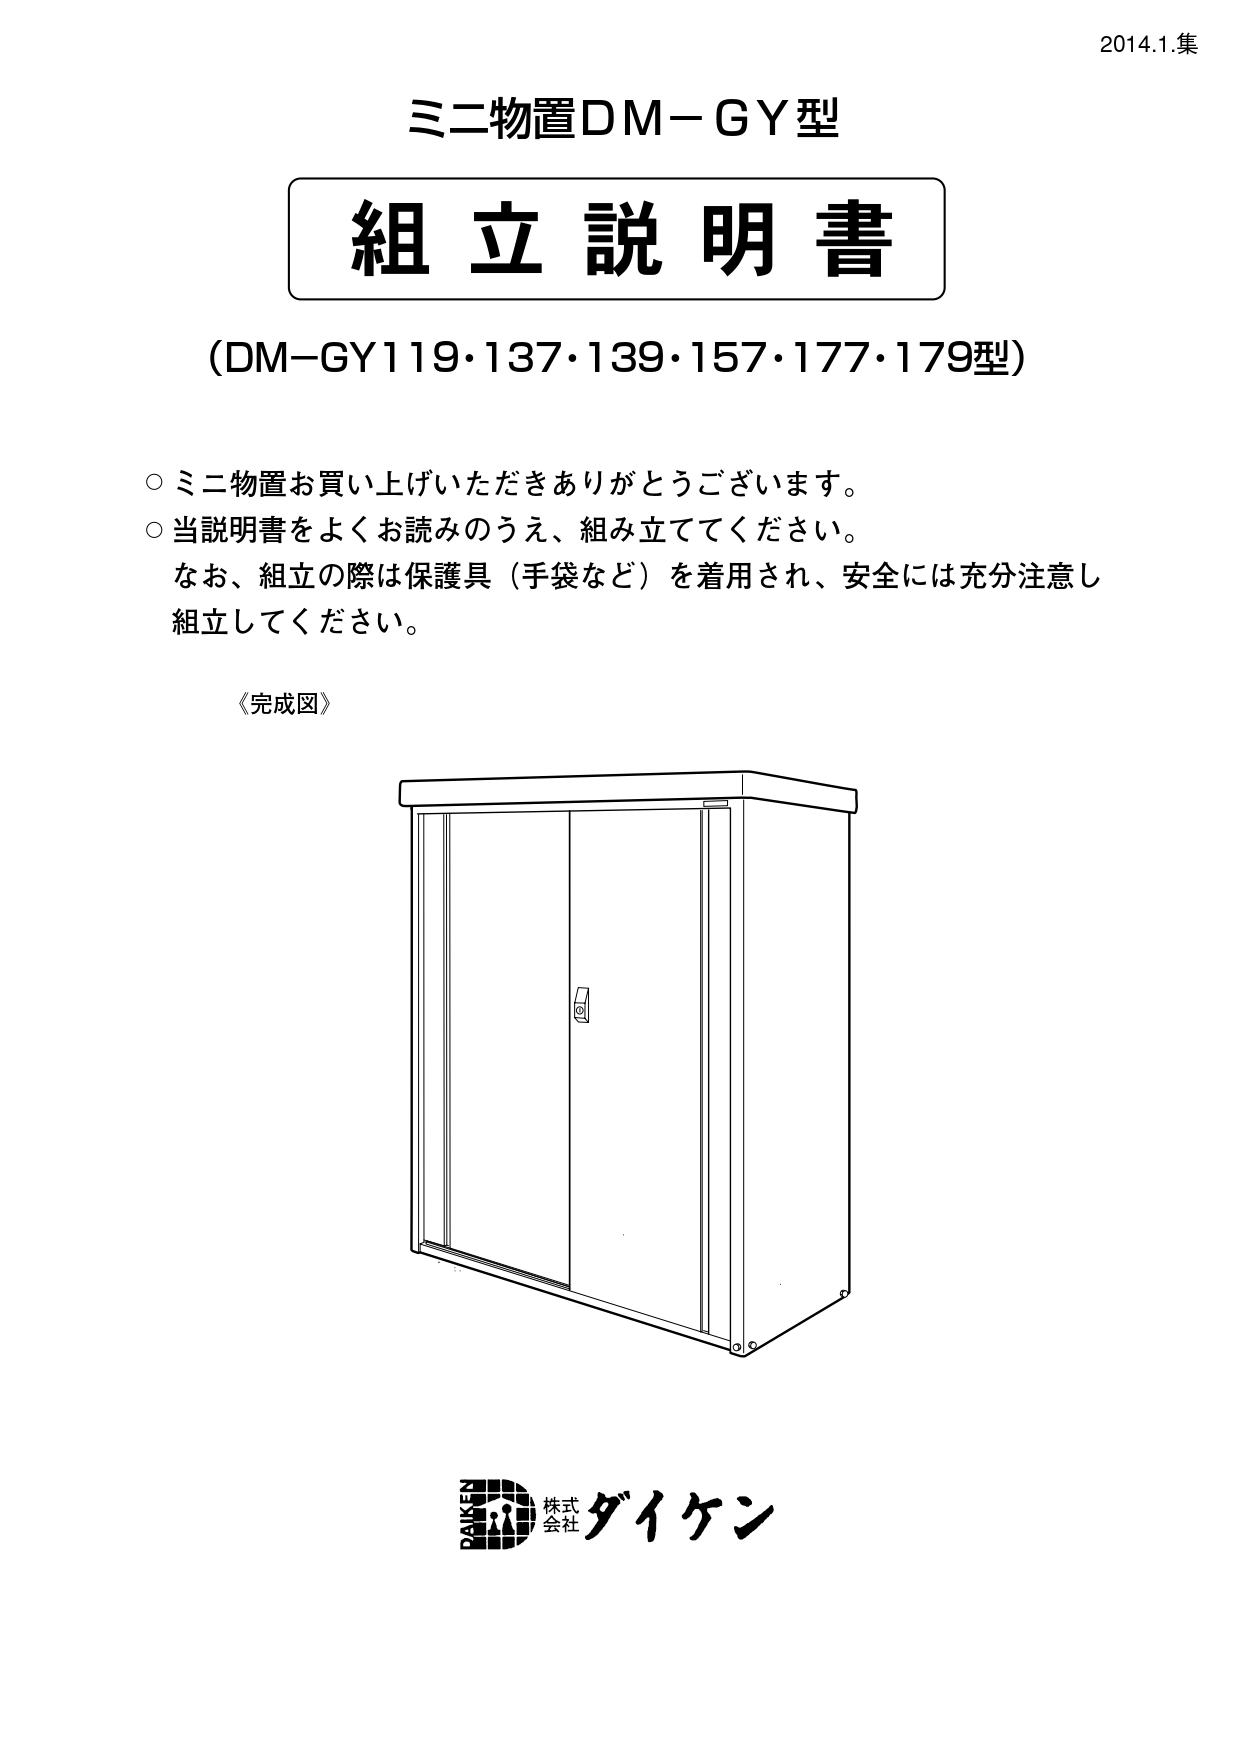 ダイケン】小型物置 DM-GY157 郵便ポスト・宅配ボックスの激安販売 エクストリム